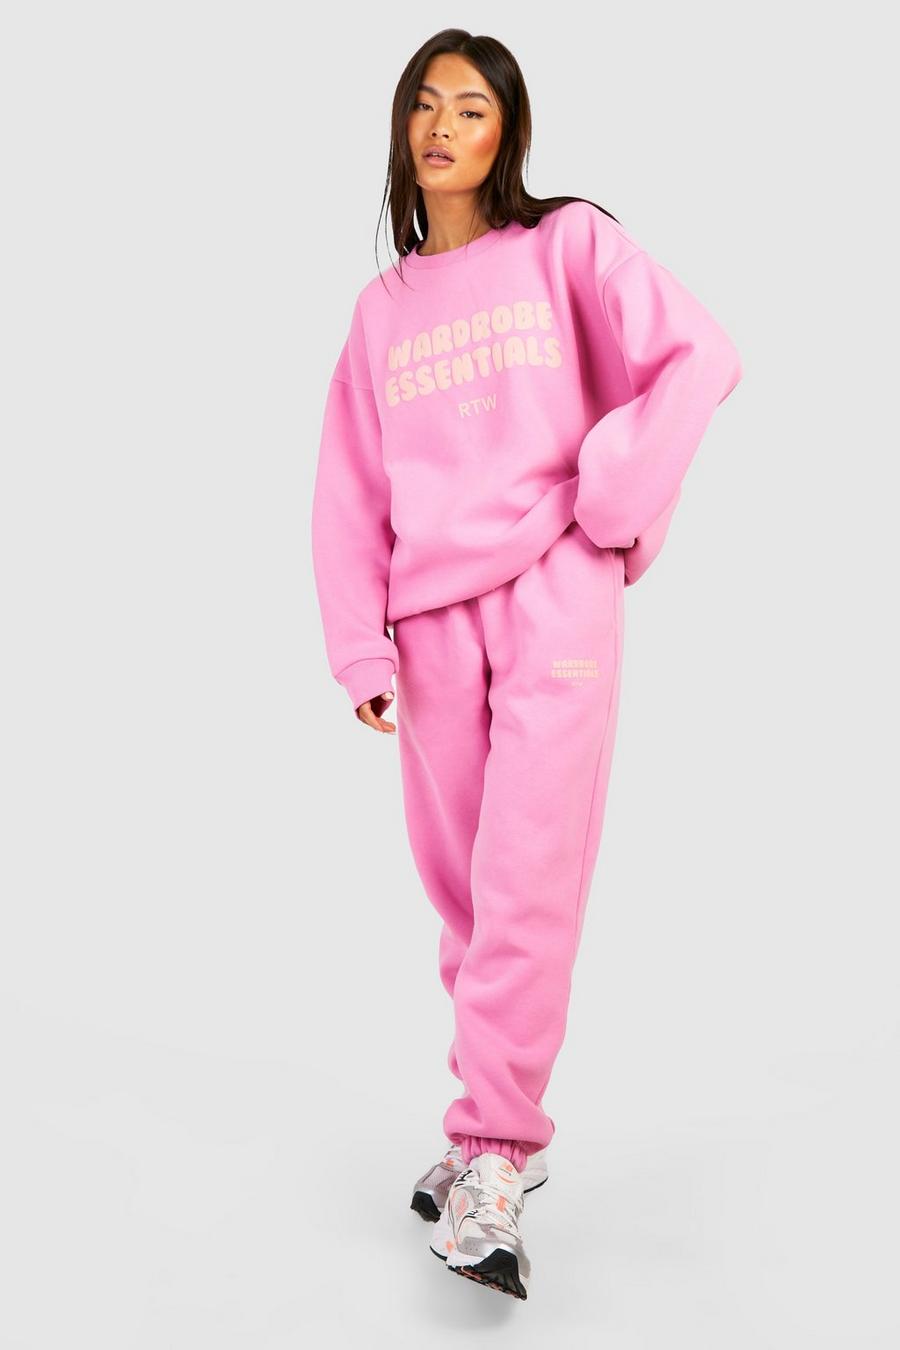 Sweatshirt-Trainingsanzug mit Wardrobe Essentials Slogan, Pink